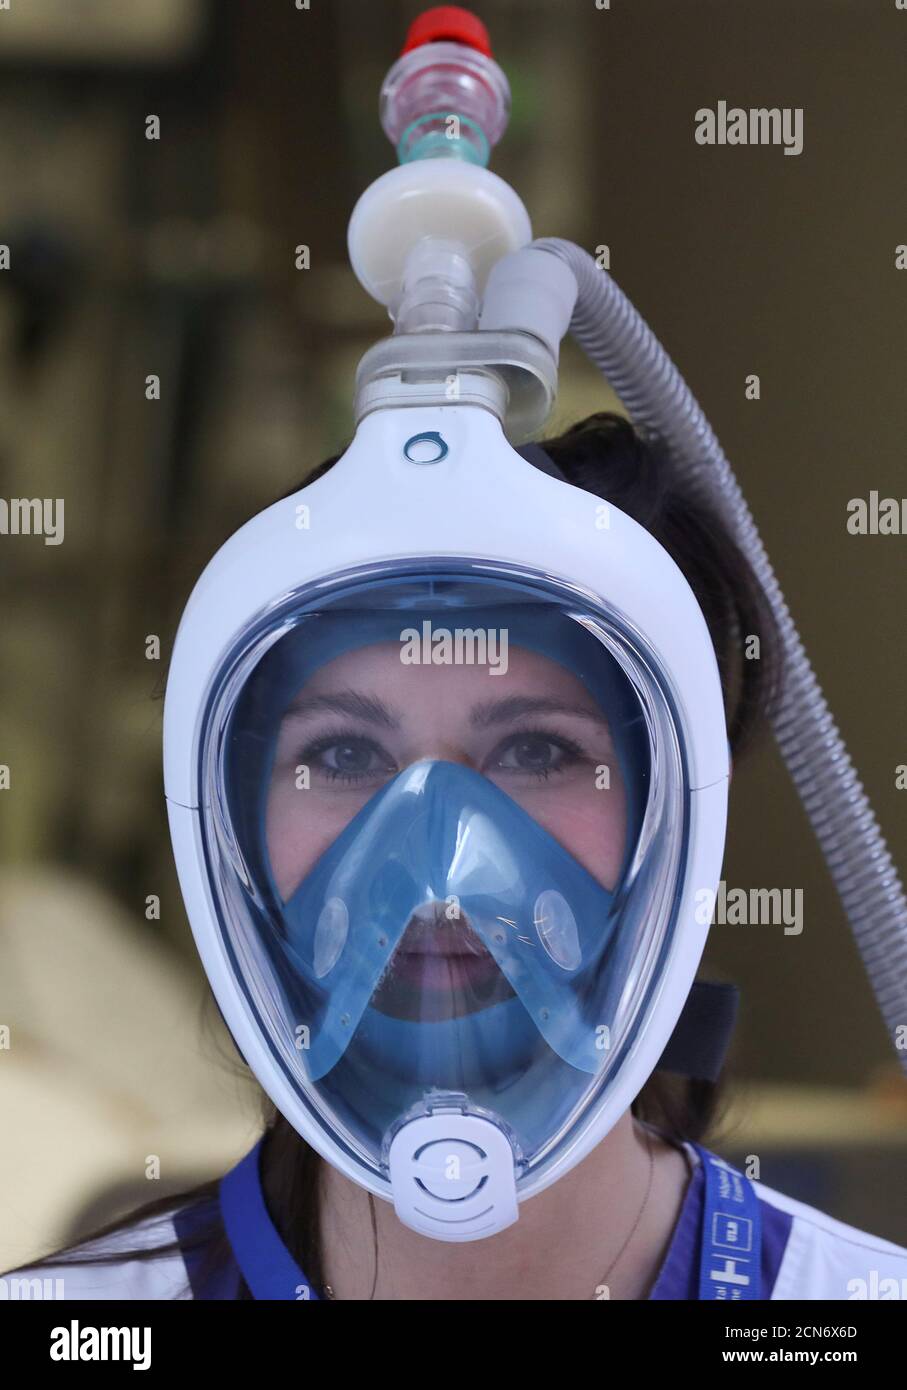 Un'infermiera indossa una maschera da snorkeling a pieno facciale, come  parte di una donazione di 50 maschere da snorkeling da parte della catena  sportiva Decathlon, trasformata come respiratori per aiutare a trattare